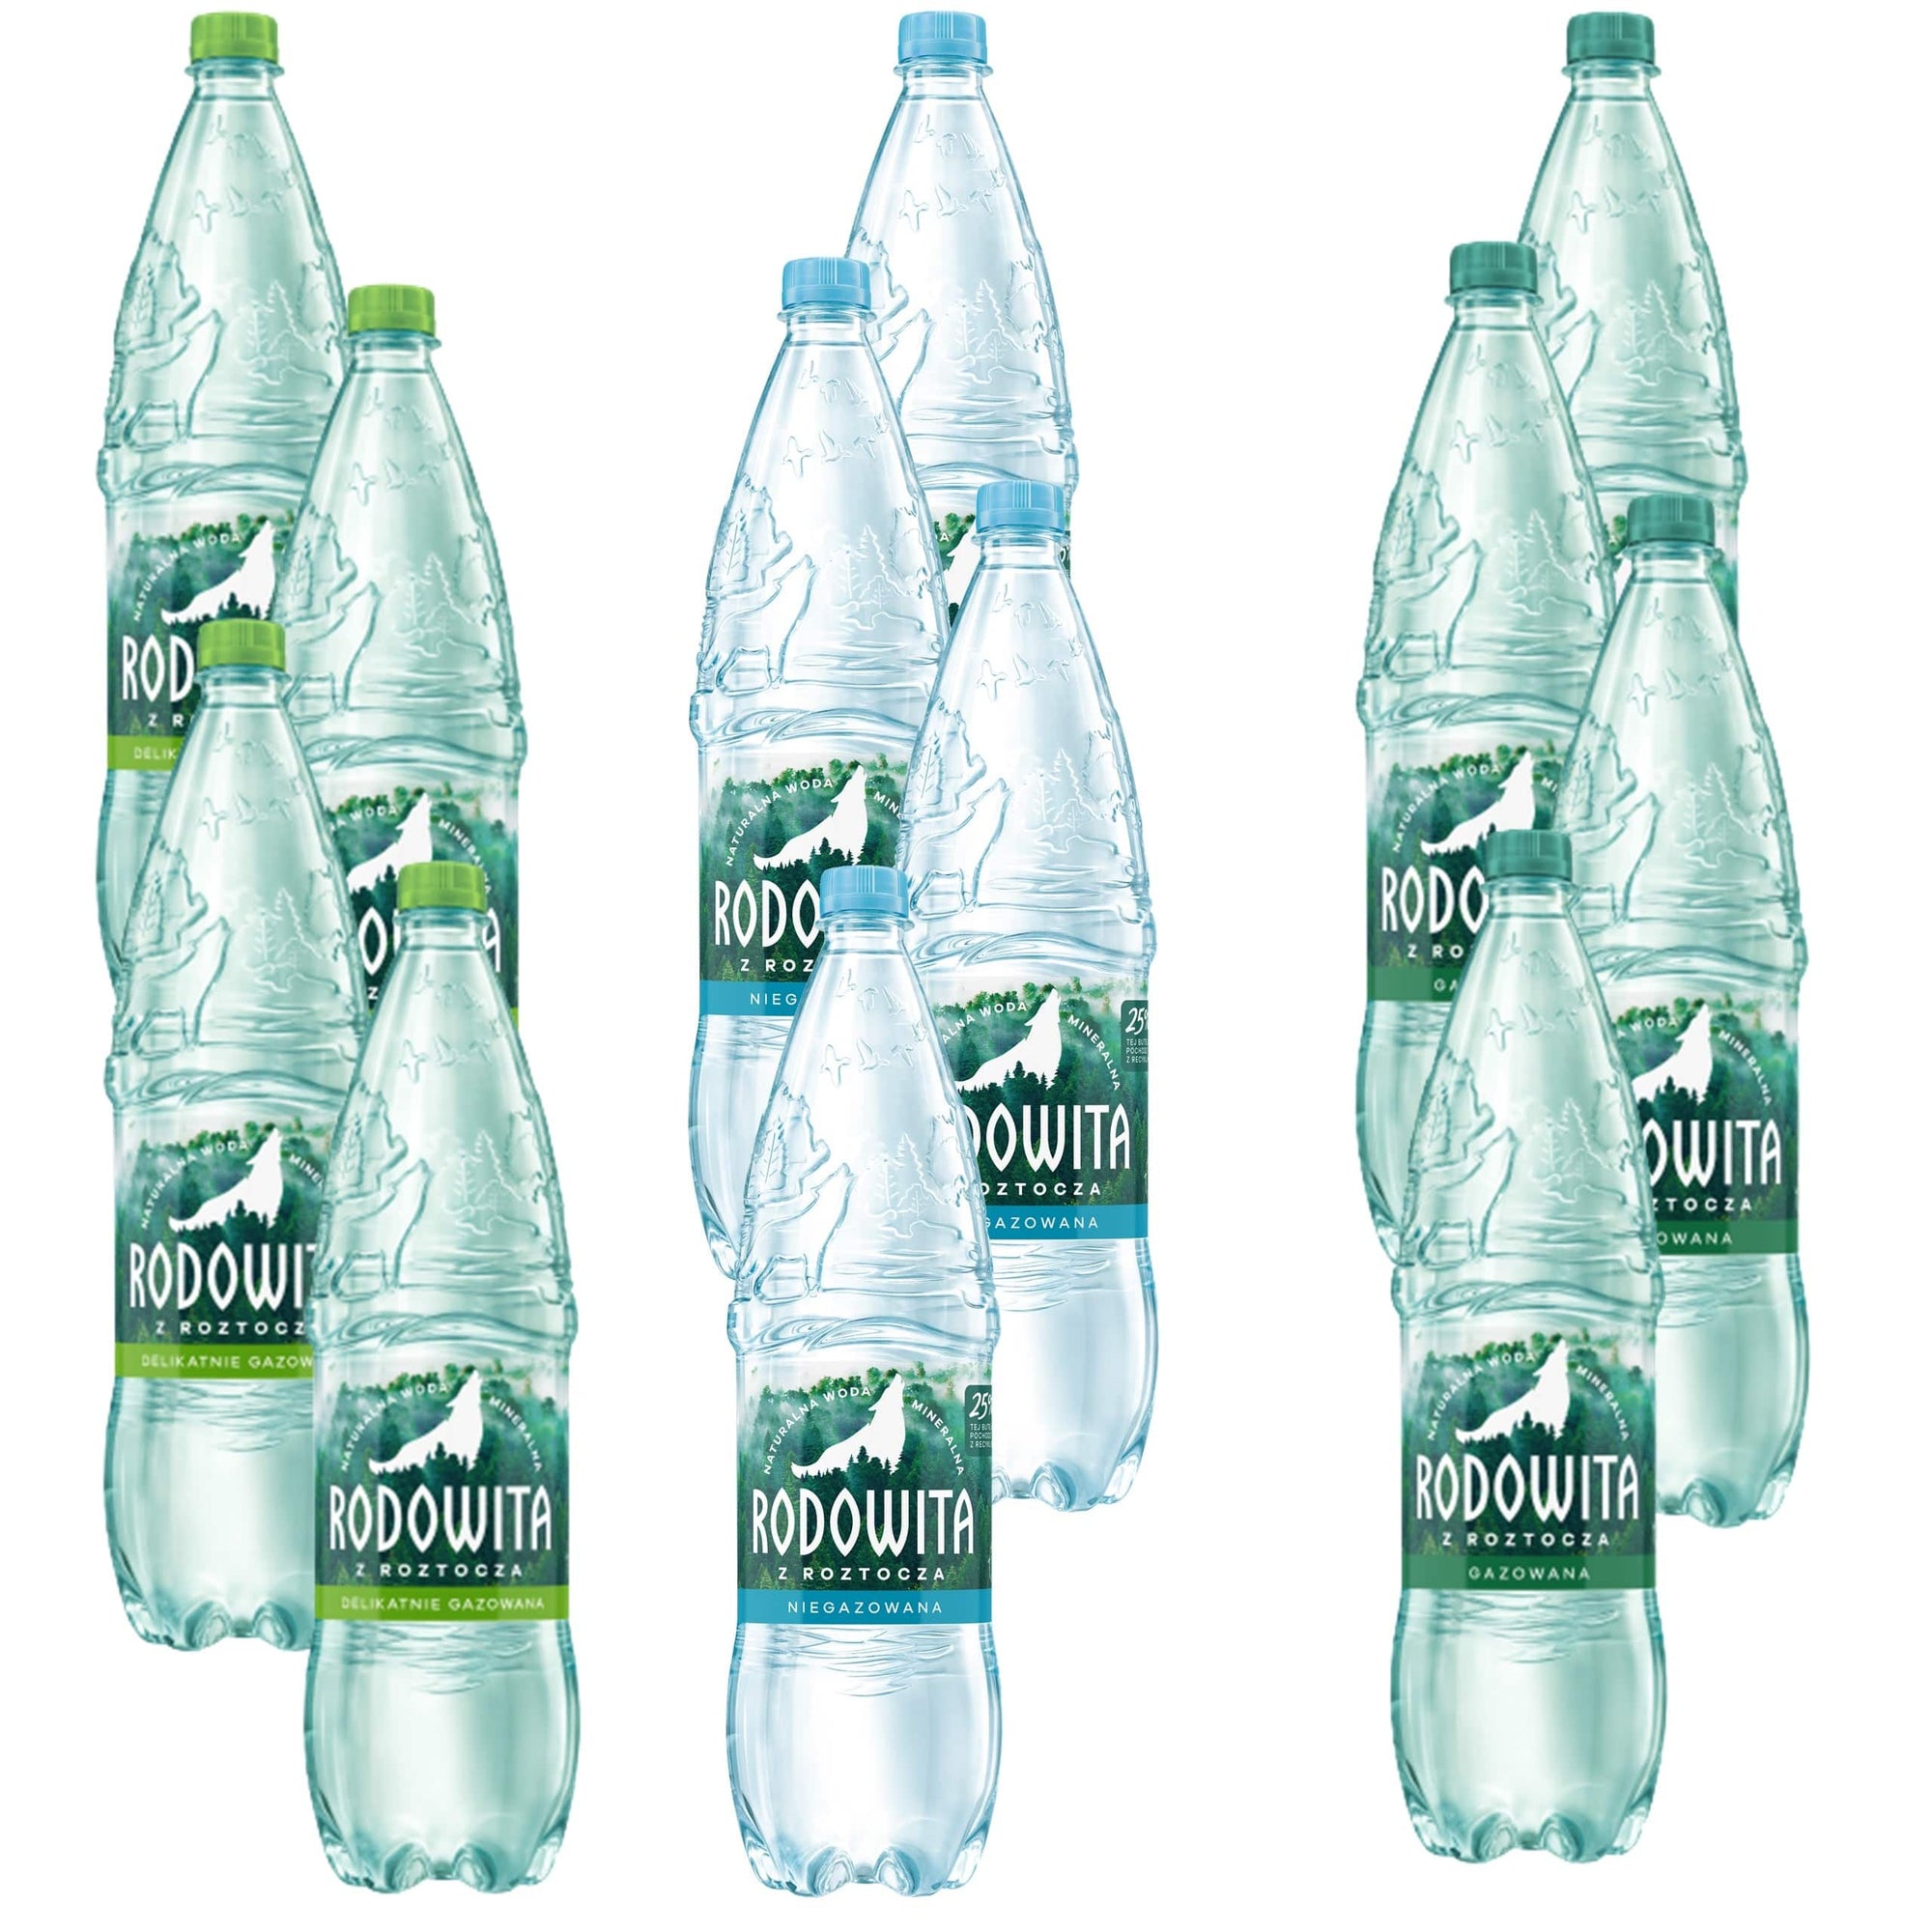 Produkt RODOWITA Woda Woda mineralna RODOWITA z Roztocza MIX 12x 1,5 l Z00047